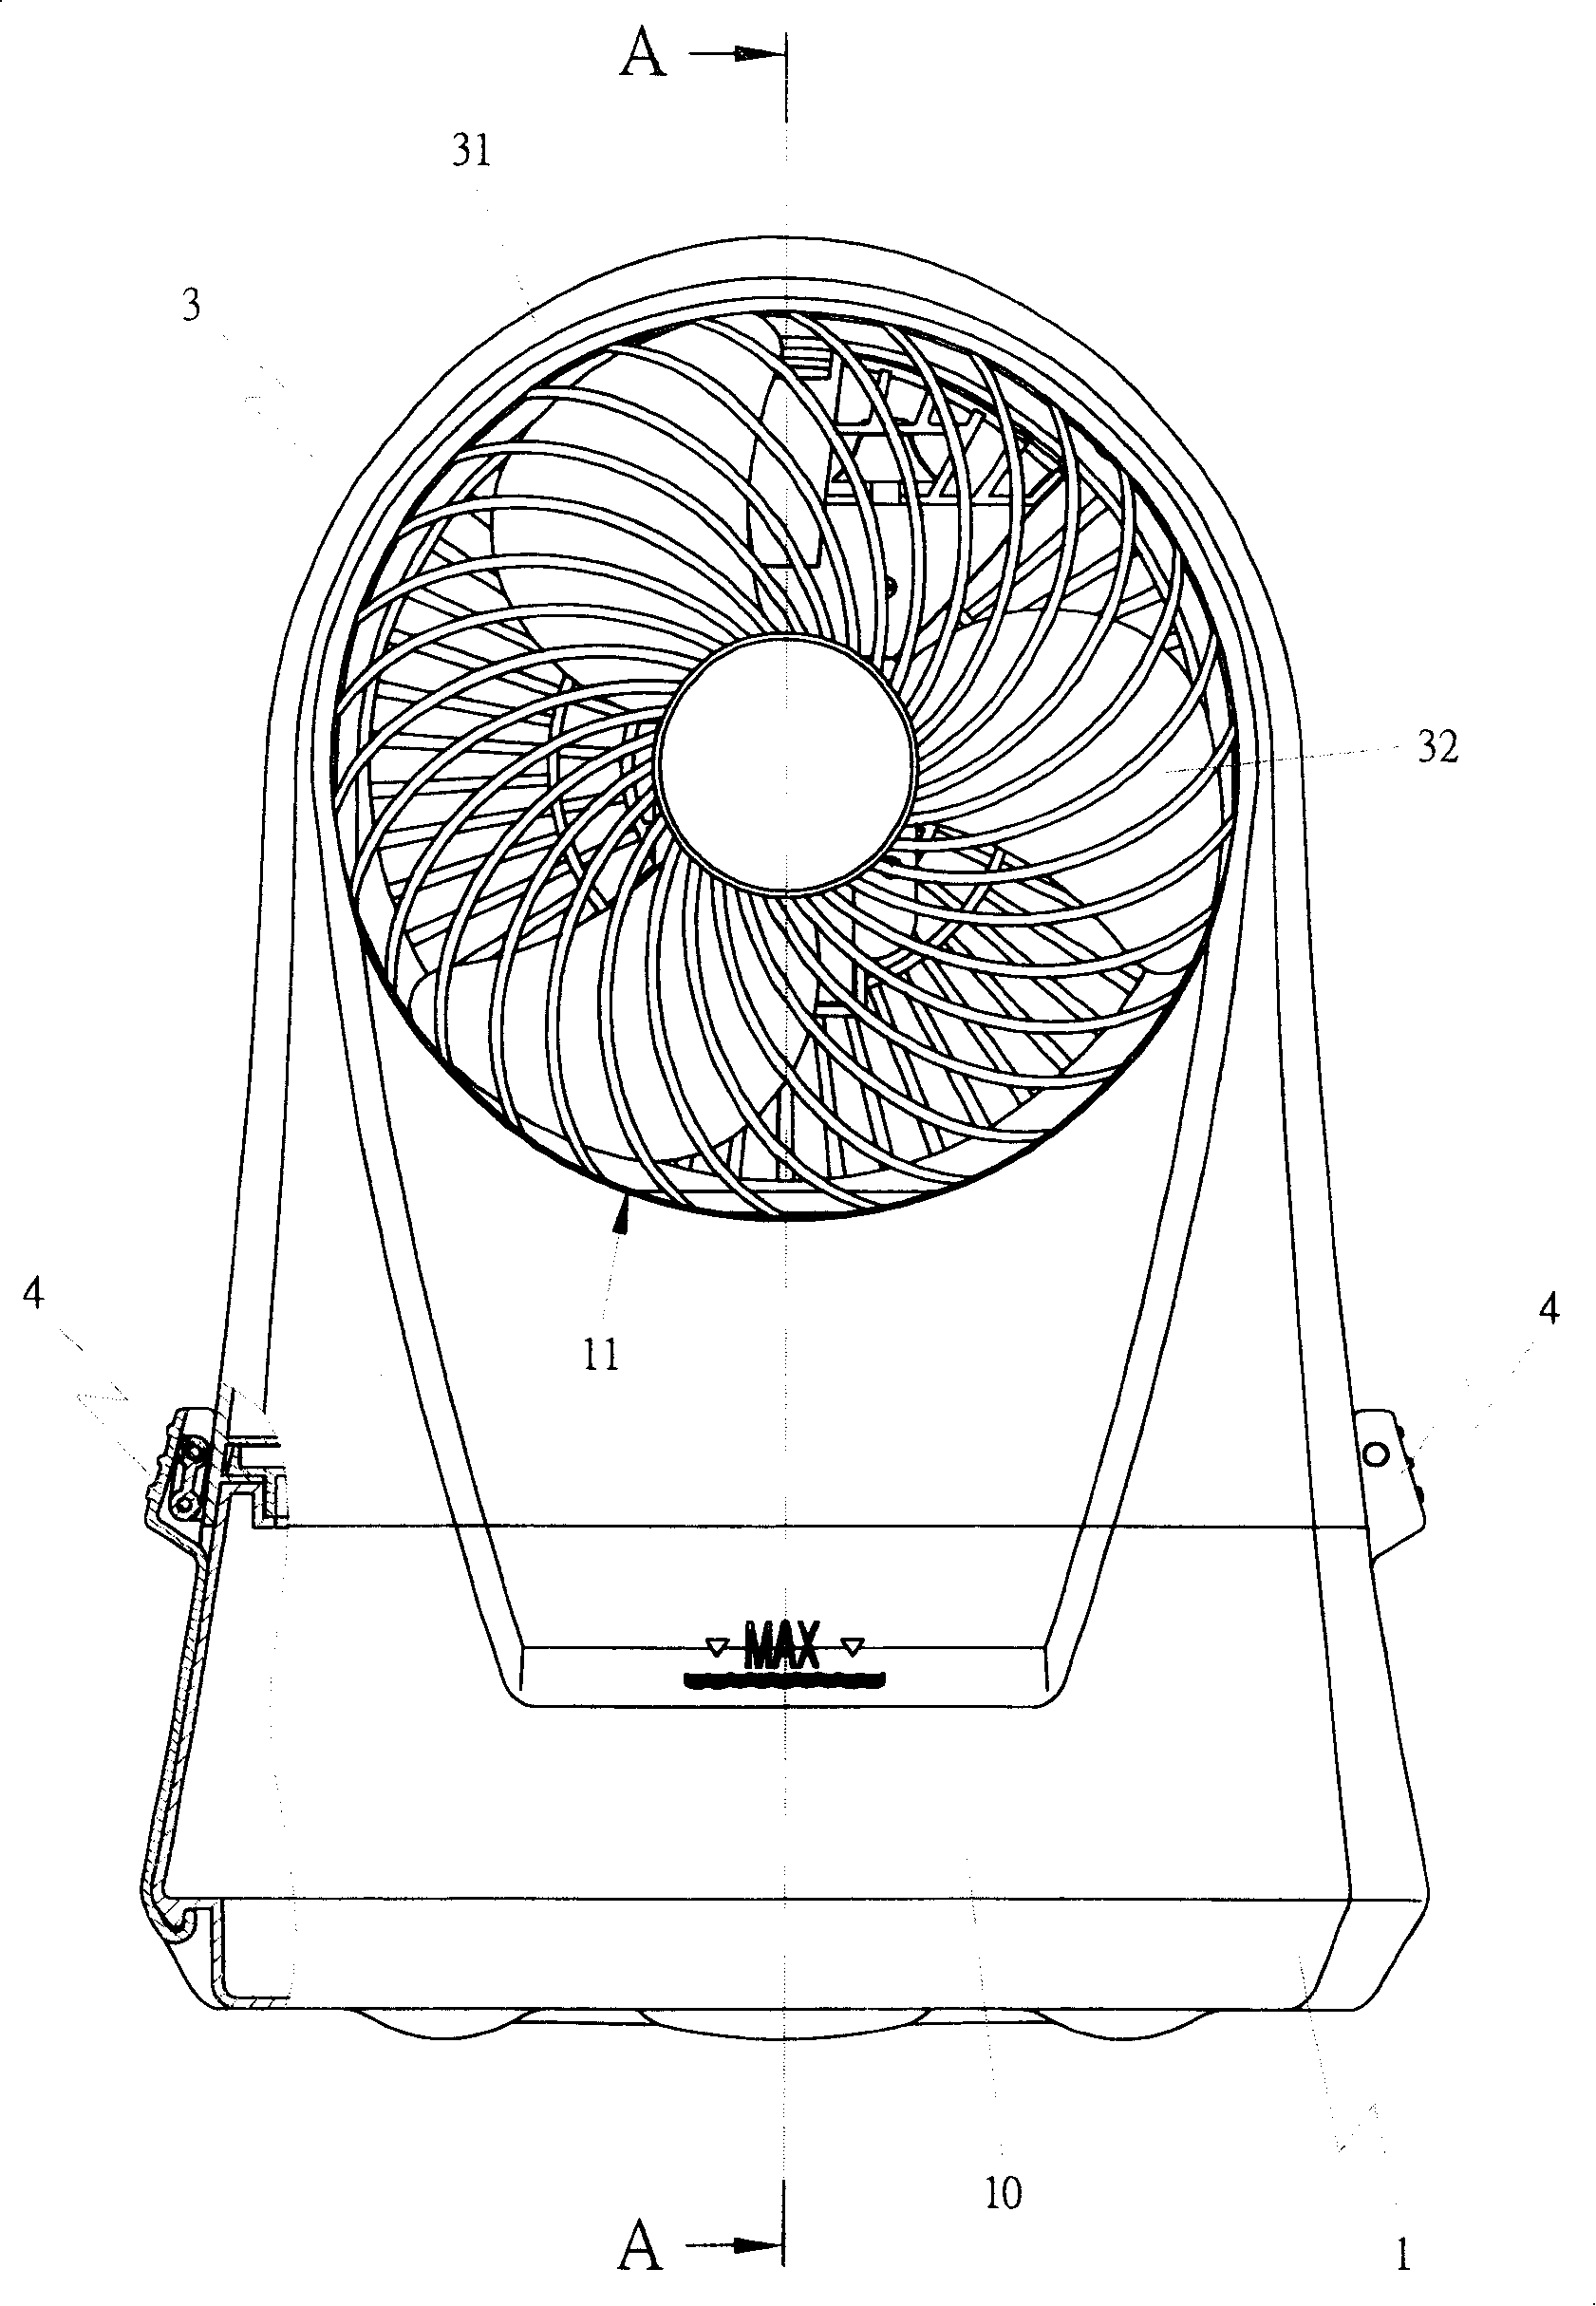 Water spraying fan